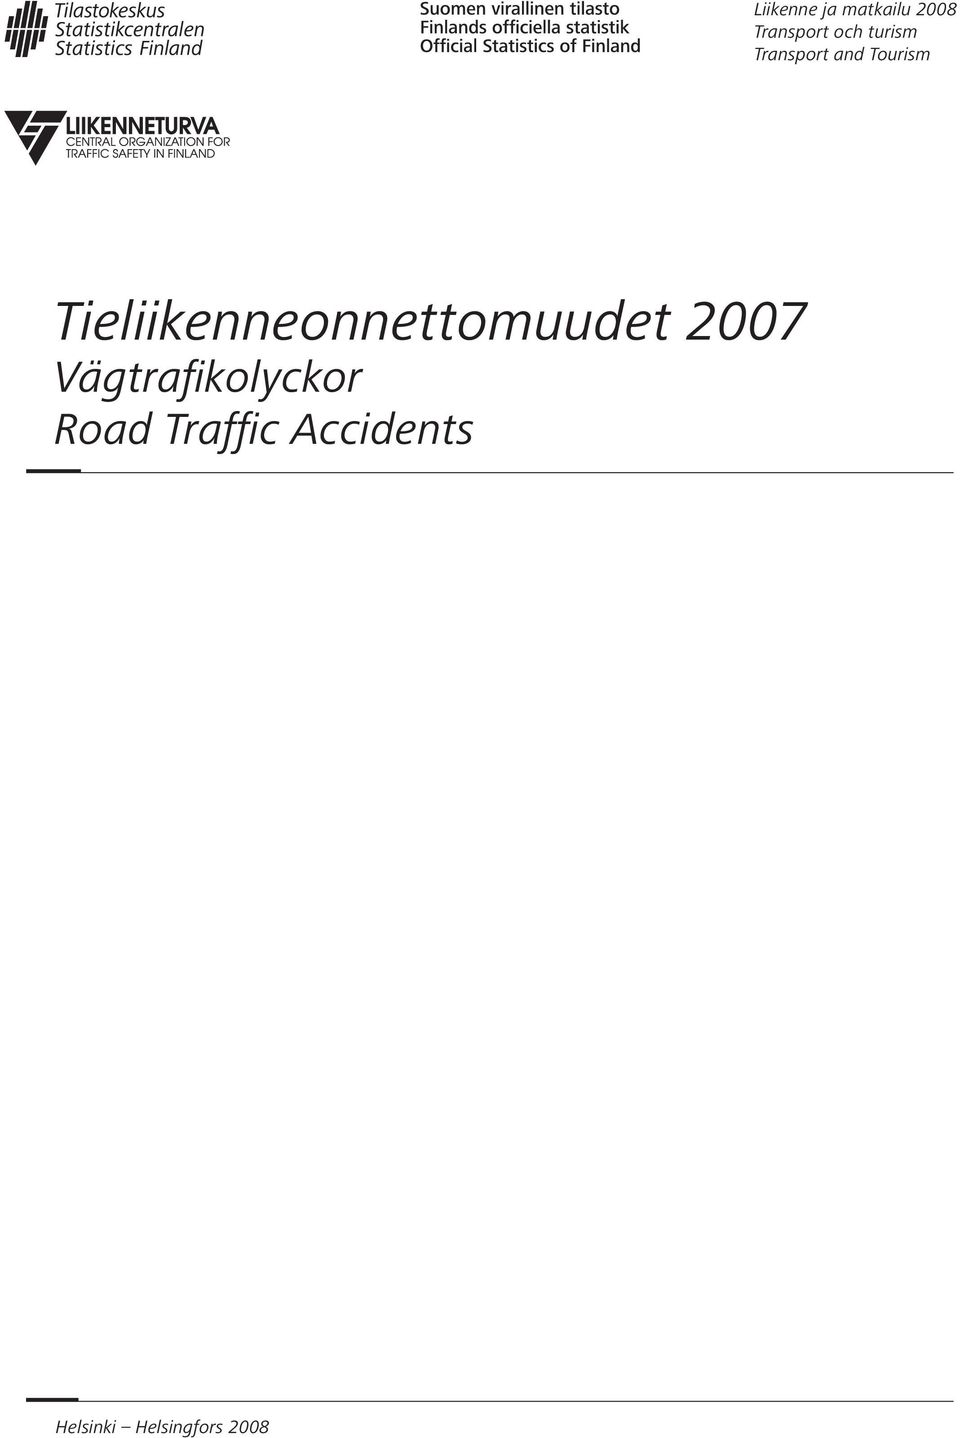 Tieliikenneonnettomuudet 2007